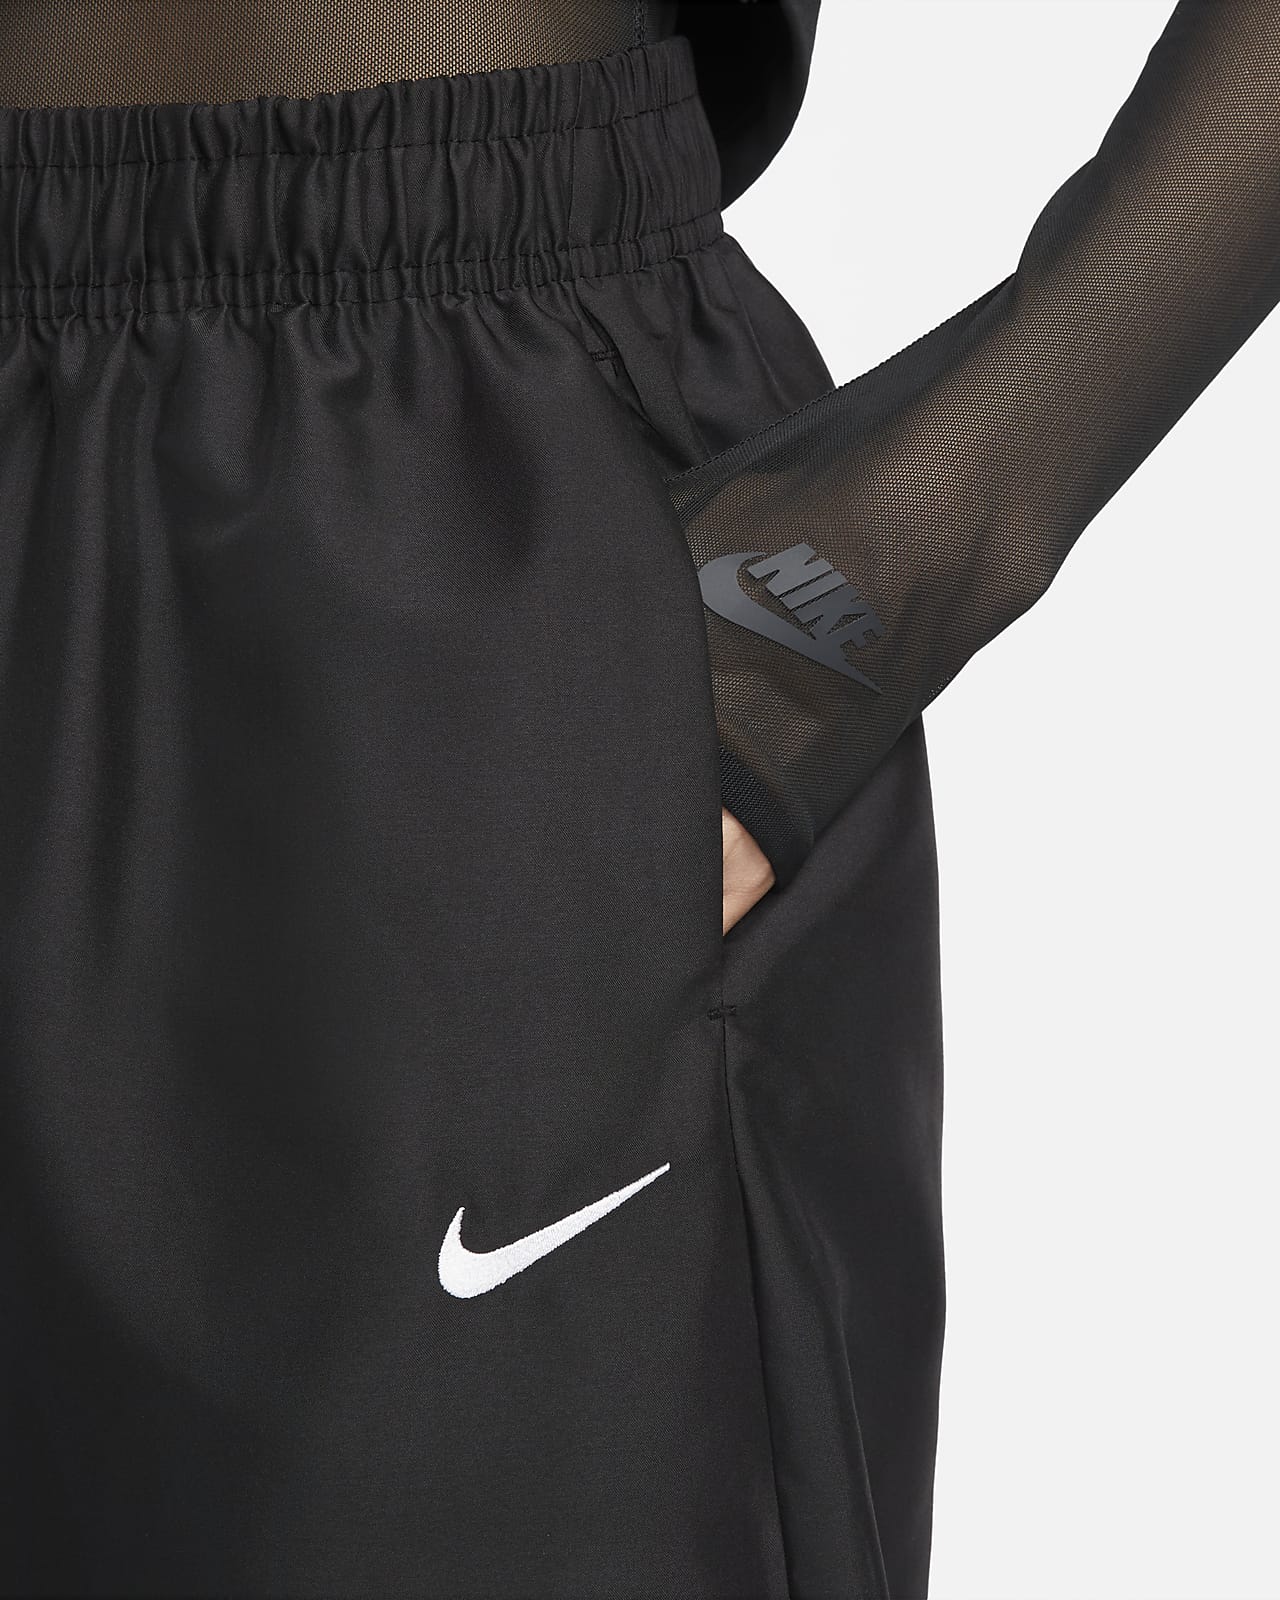 Nike Sportswear Women's Woven Joggers